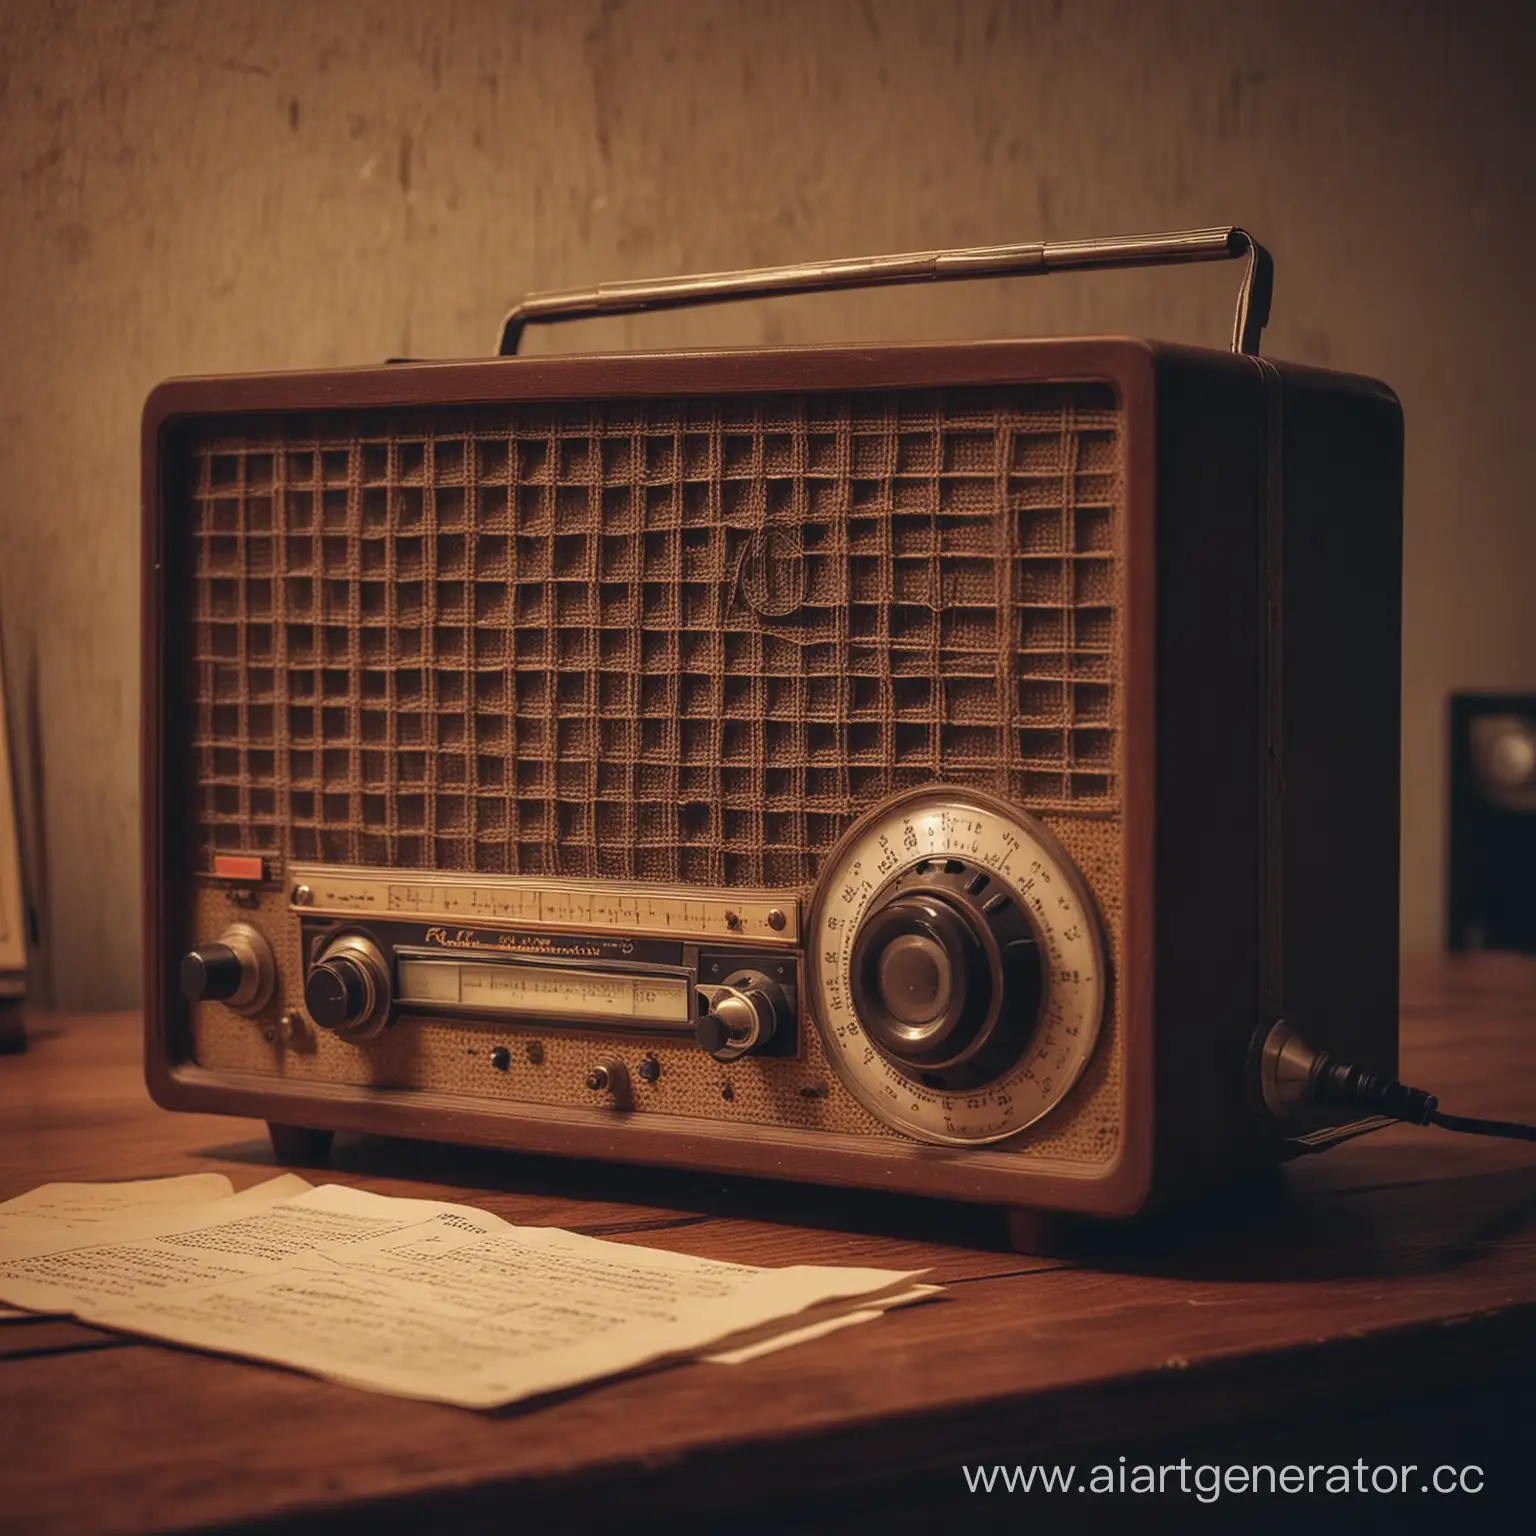 Атмосферное винтажное радио с легкими нотками грусти, вечер, почти ночь. Радио на первом плане, оно старое